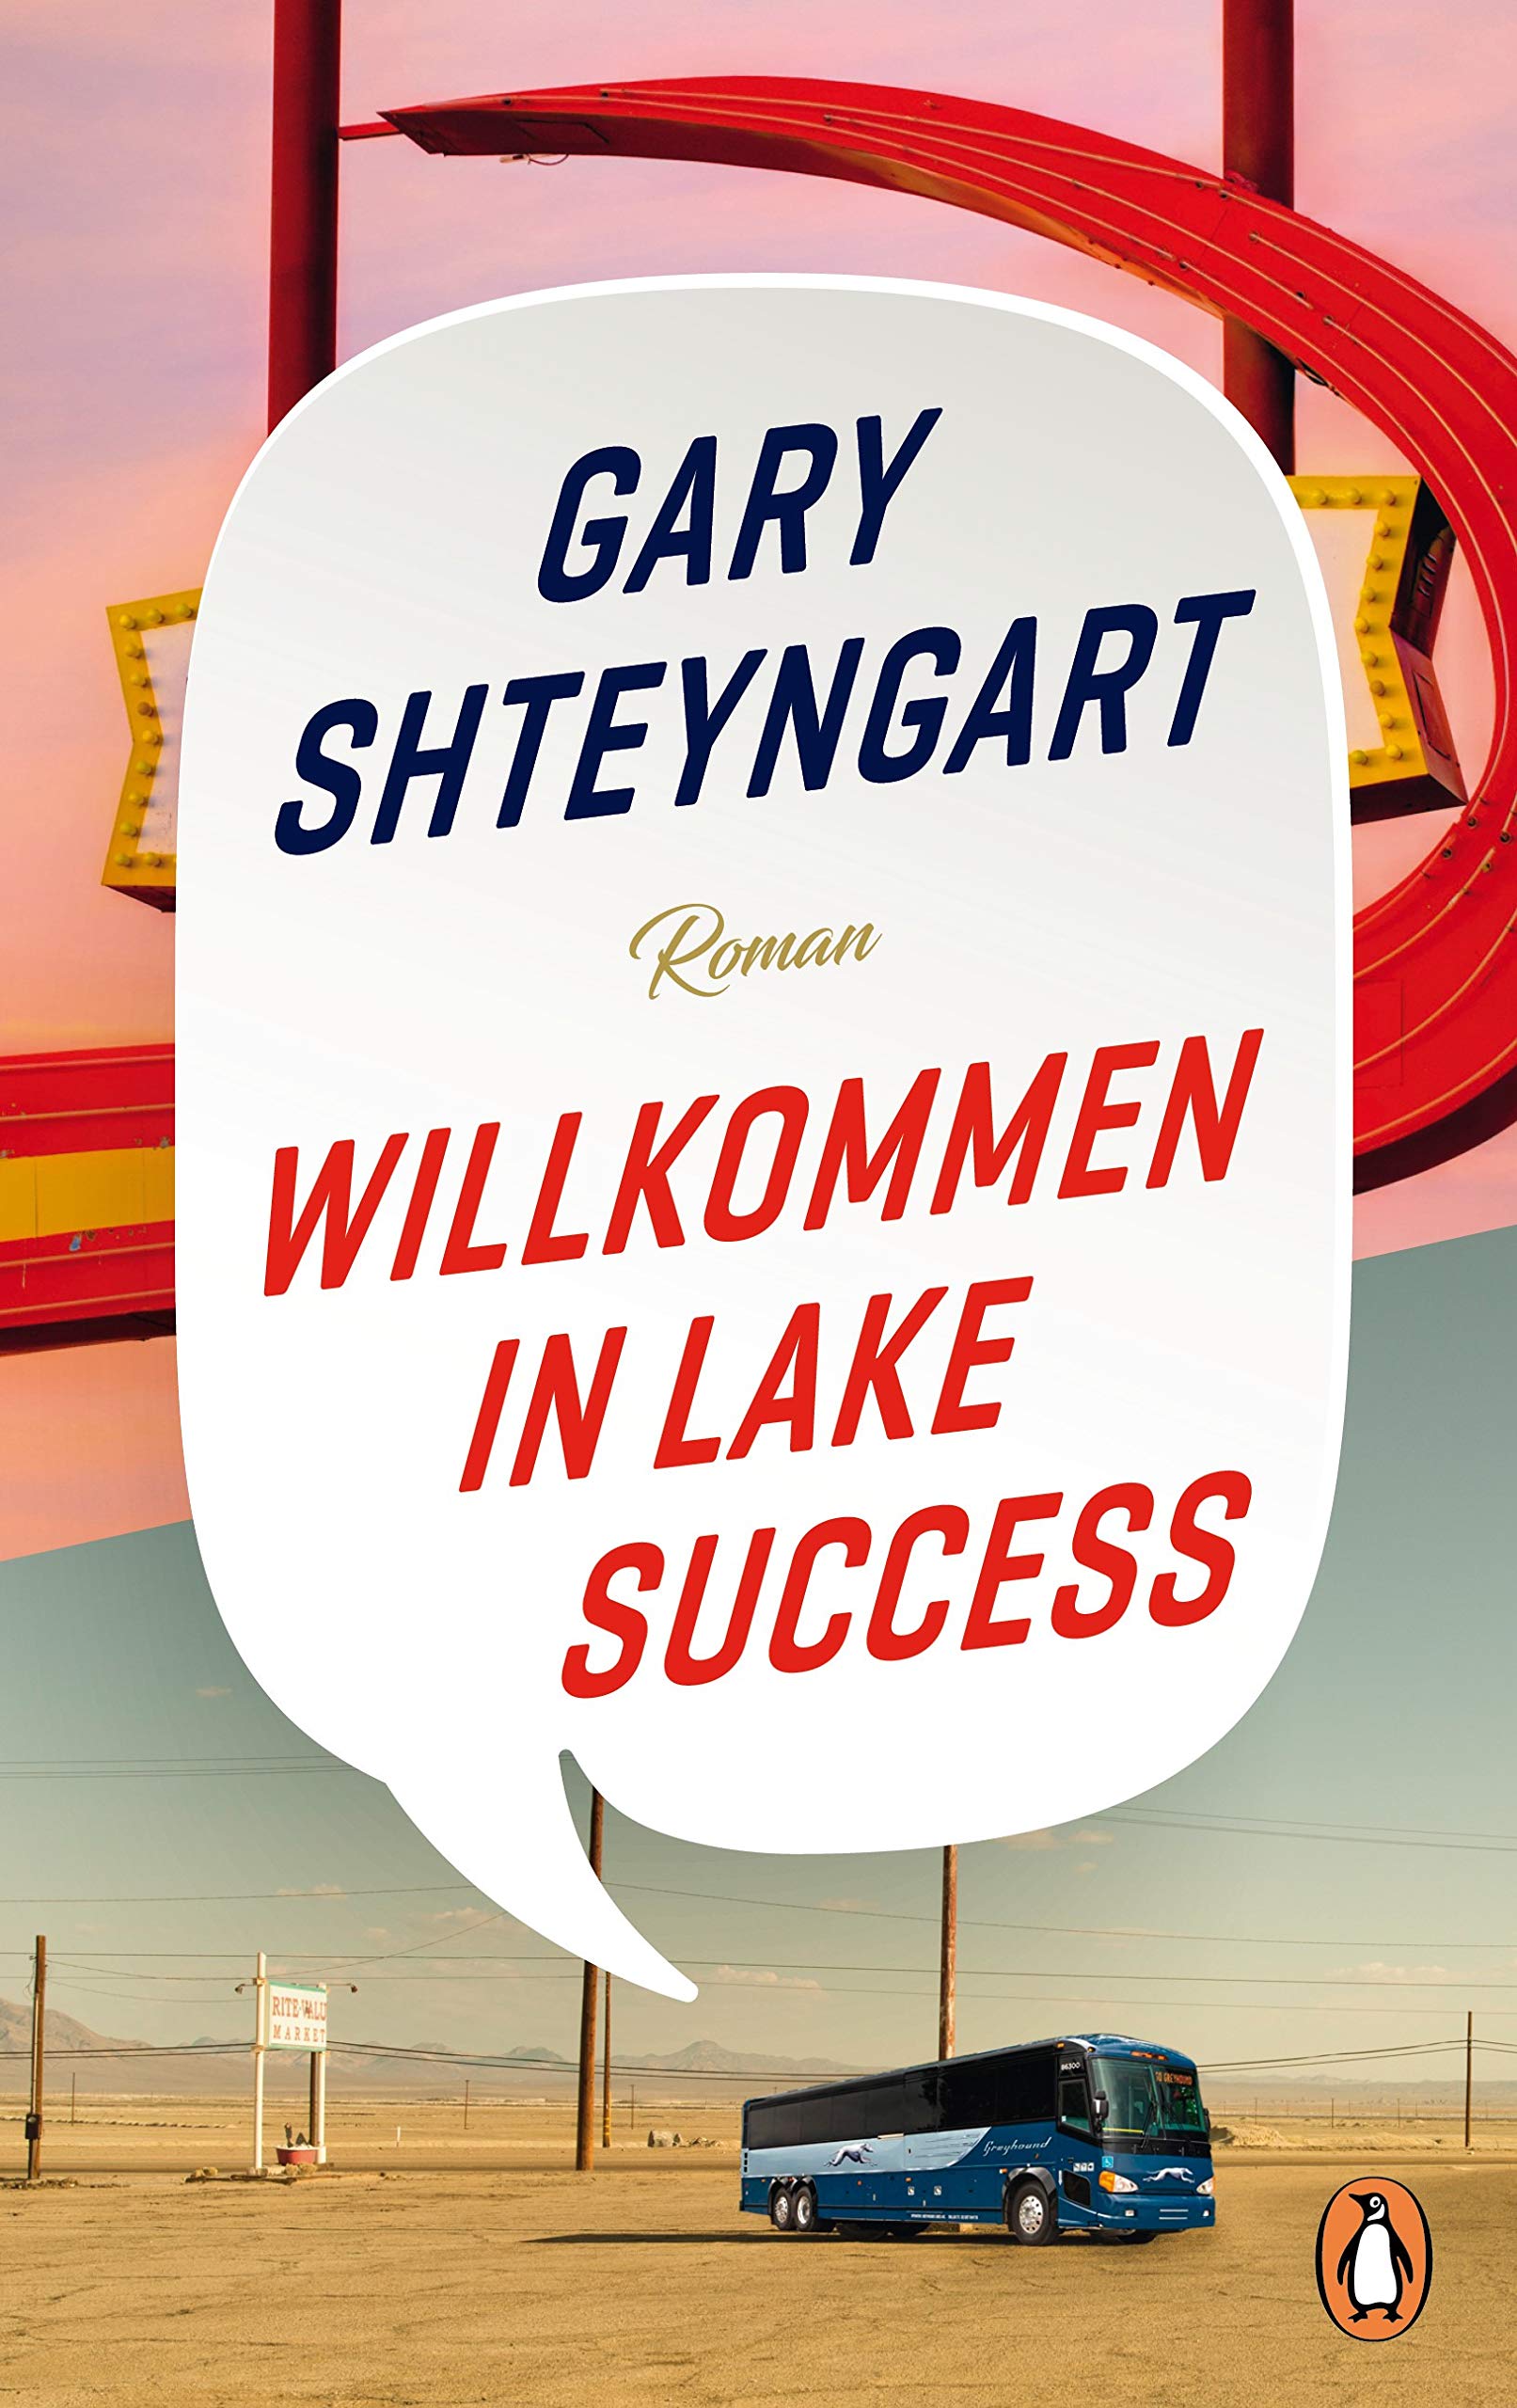 Gary Shteyngart: Willkommen in Lake Success